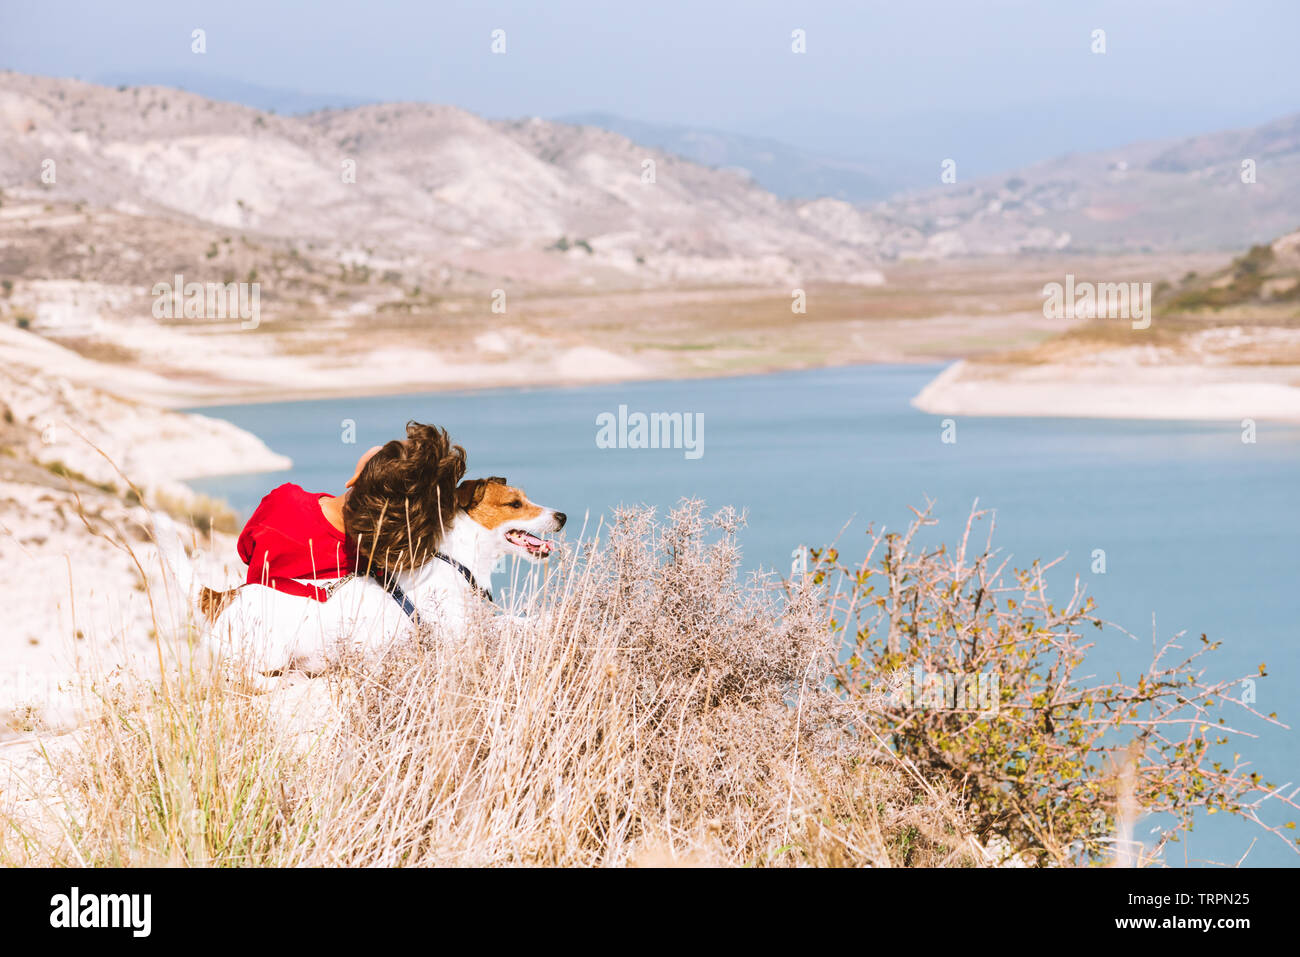 Los viajes, la familia y la vida doméstica concepto - chico y su perro mascota relajante en la cima de la montaña mirando al hermoso valle ver Foto de stock